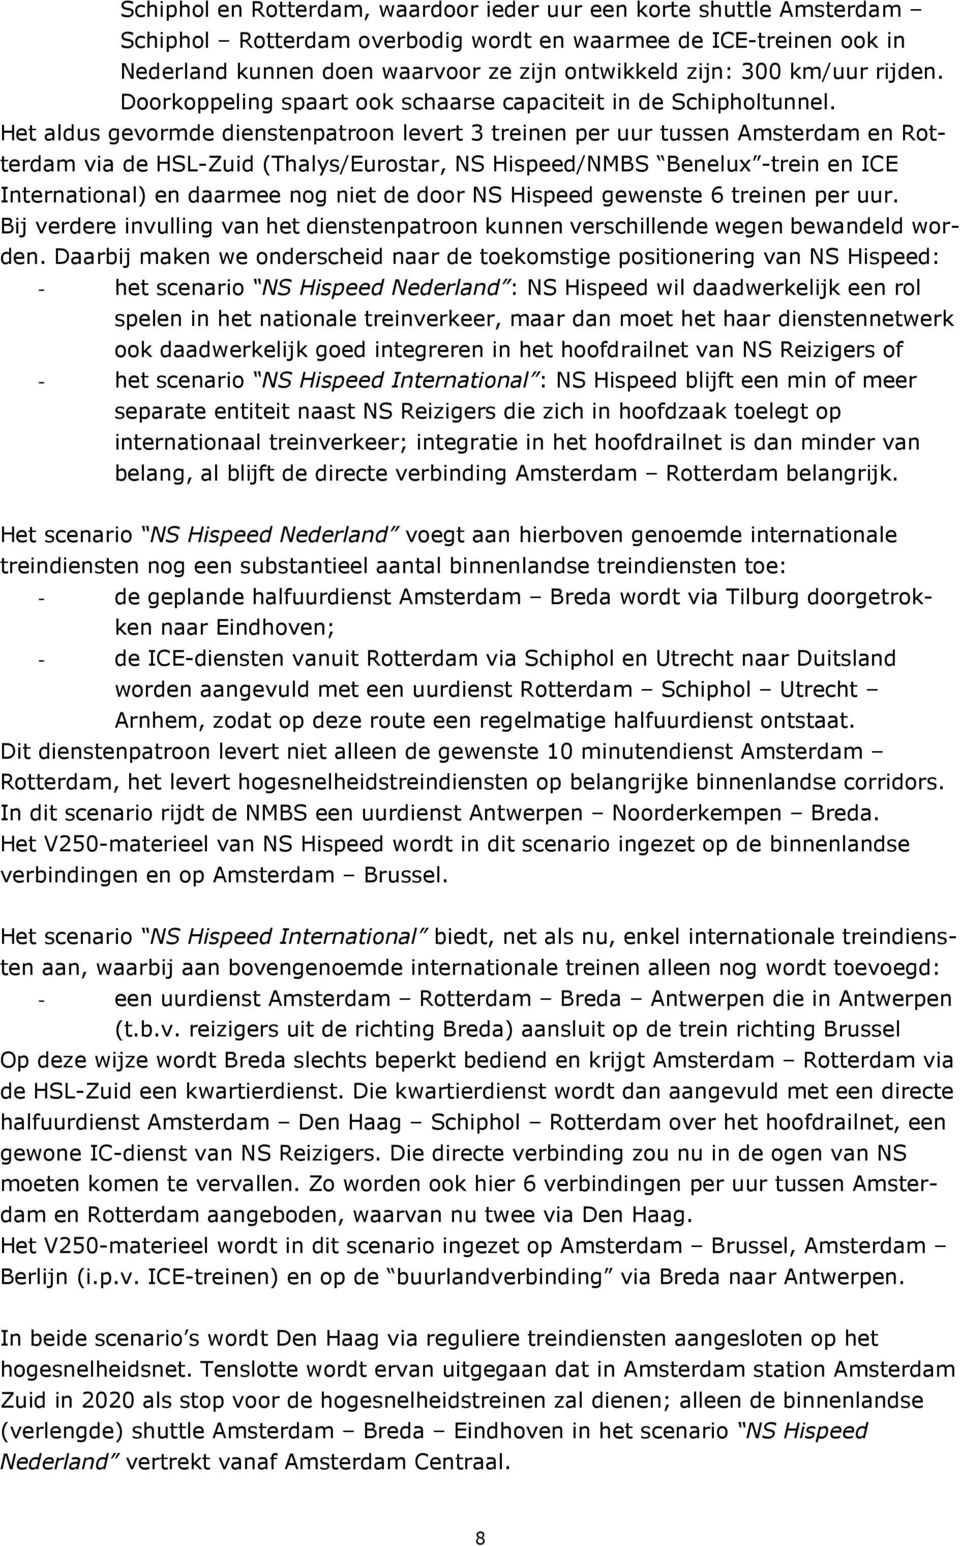 Het aldus gevormde dienstenpatroon levert 3 treinen per uur tussen Amsterdam en Rotterdam via de HSL-Zuid (Thalys/Eurostar, NS Hispeed/NMBS Benelux -trein en ICE International) en daarmee nog niet de